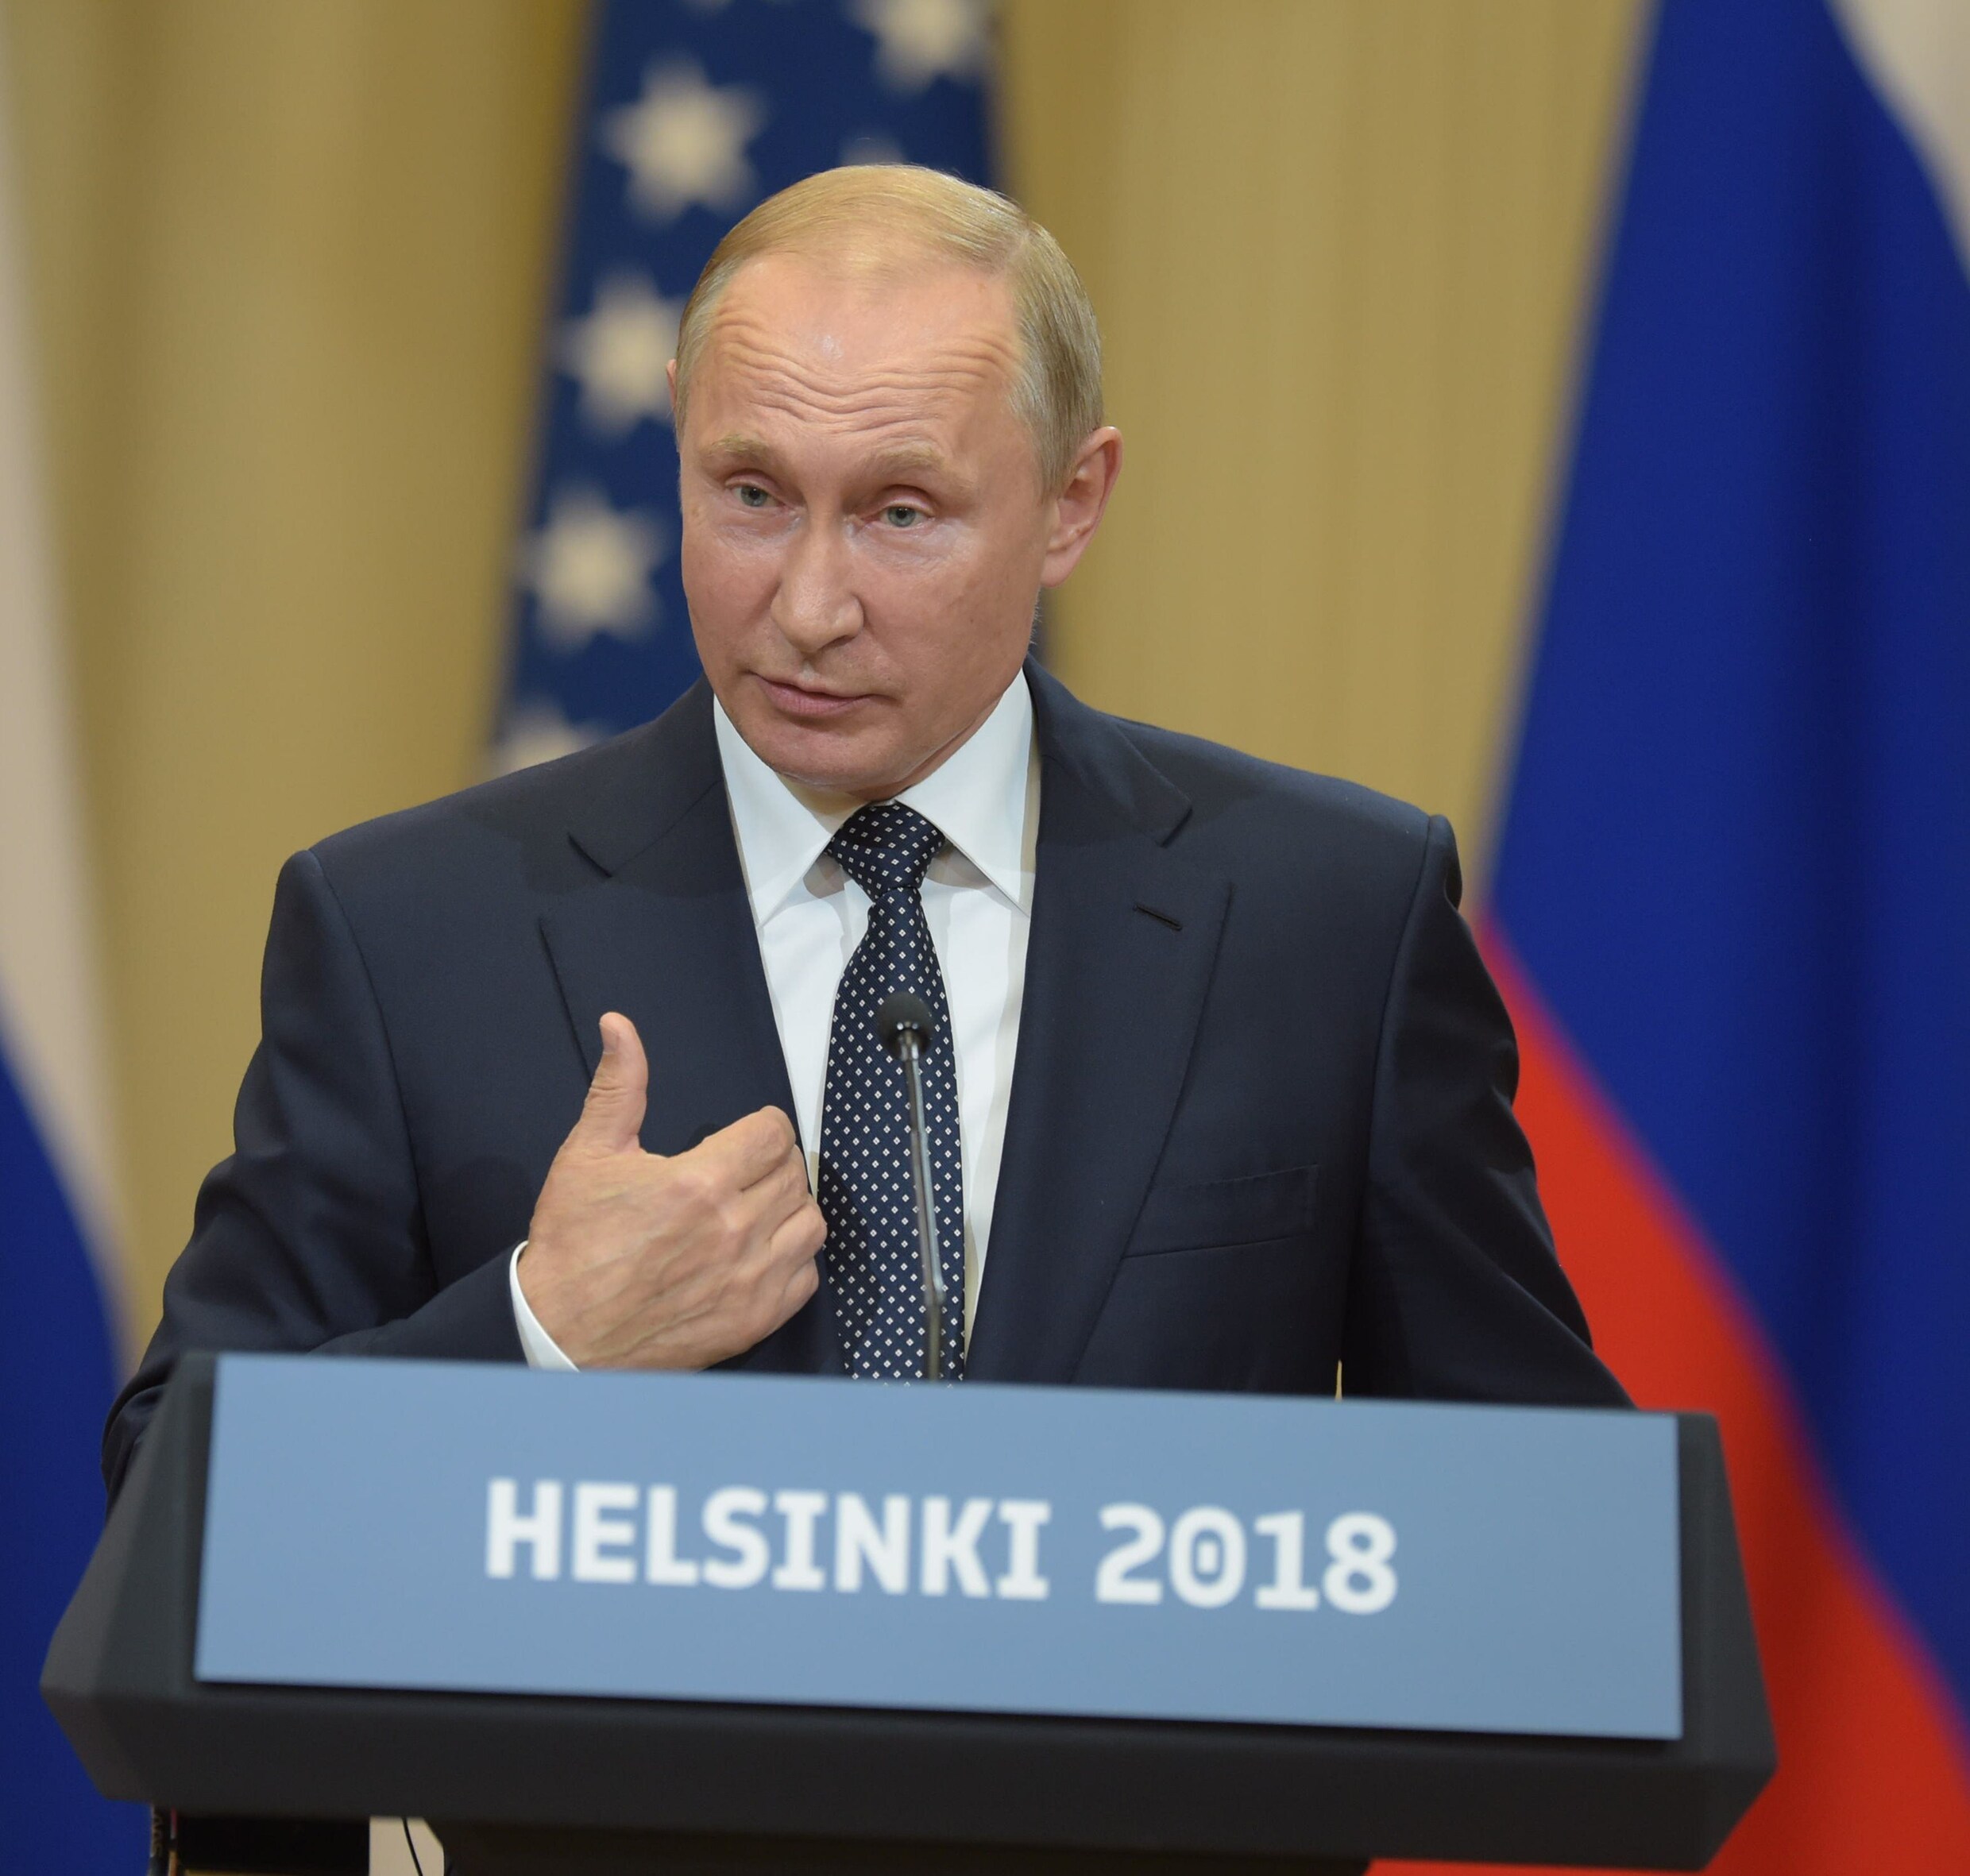 Poetin: "Westen verantwoordelijk voor moeilijke relatie met Rusland"